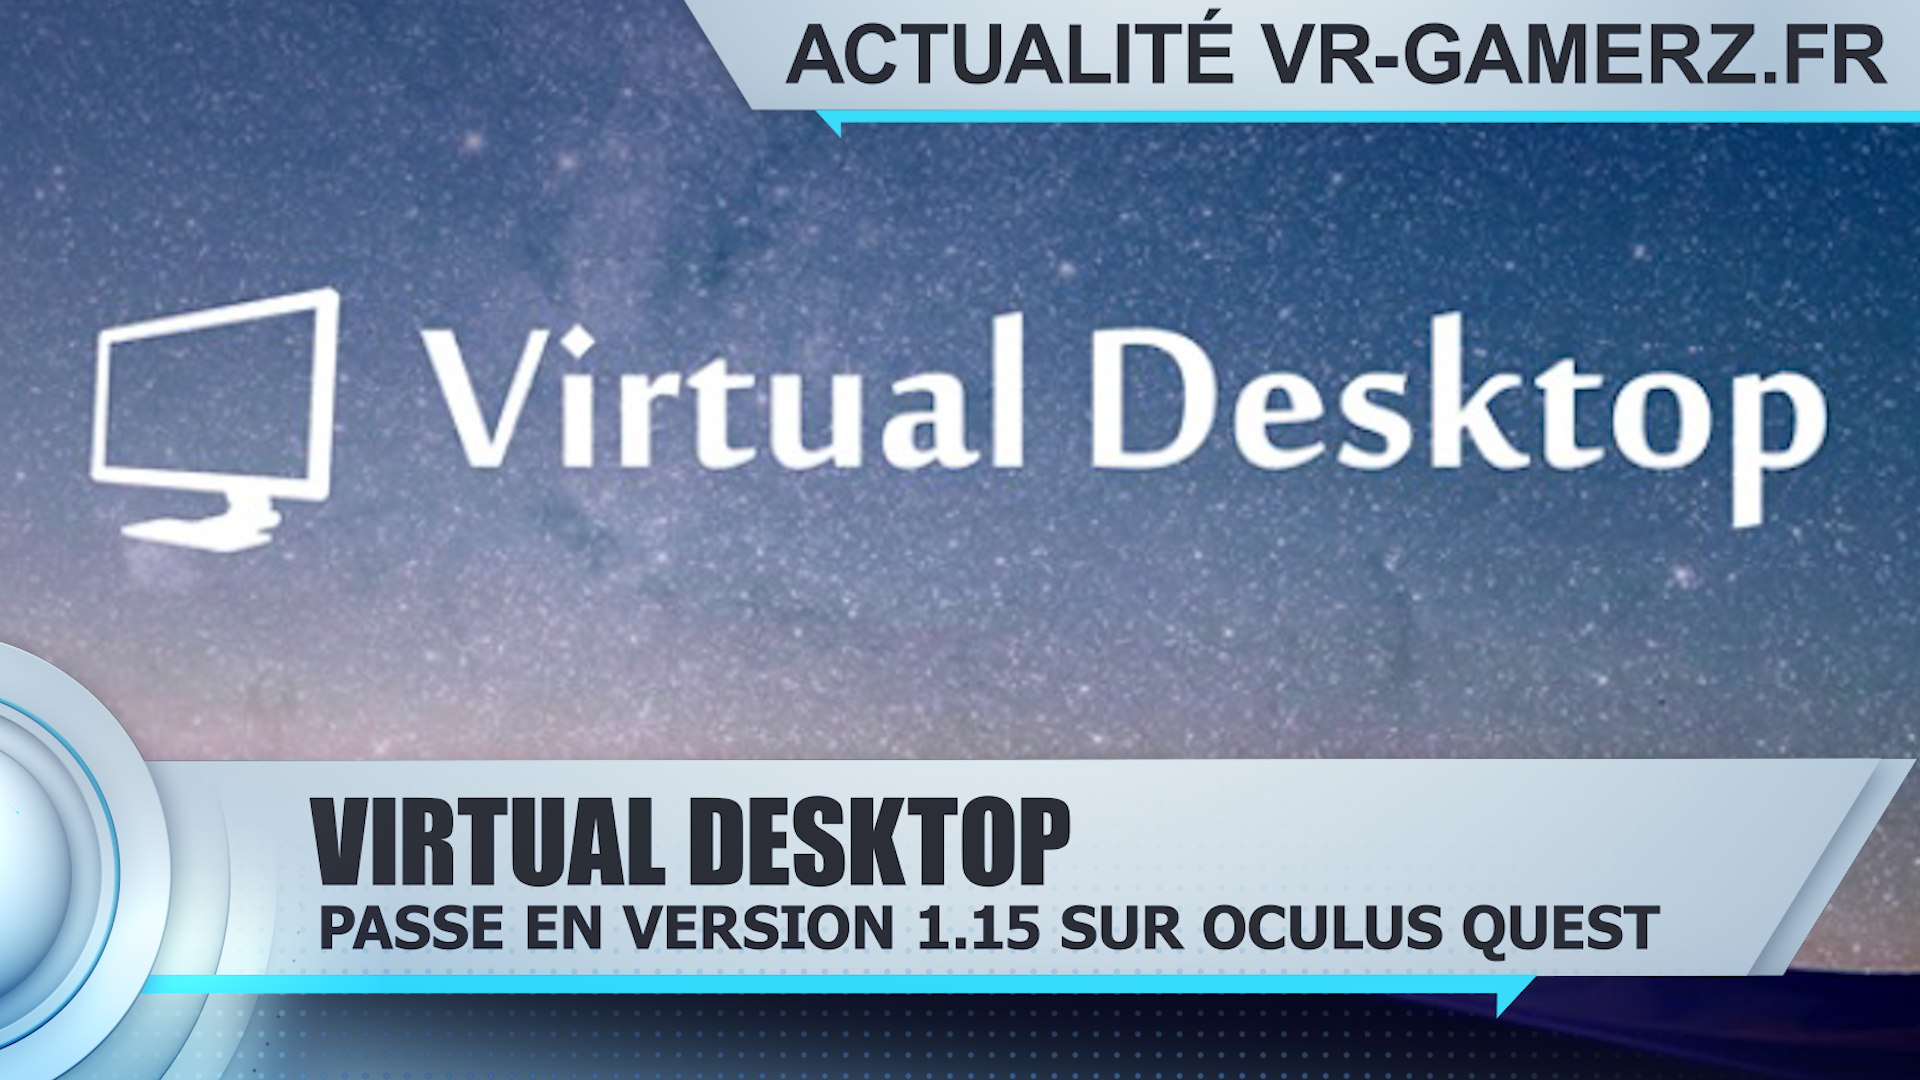 Virtual desktop : La version 1.15 est disponible !